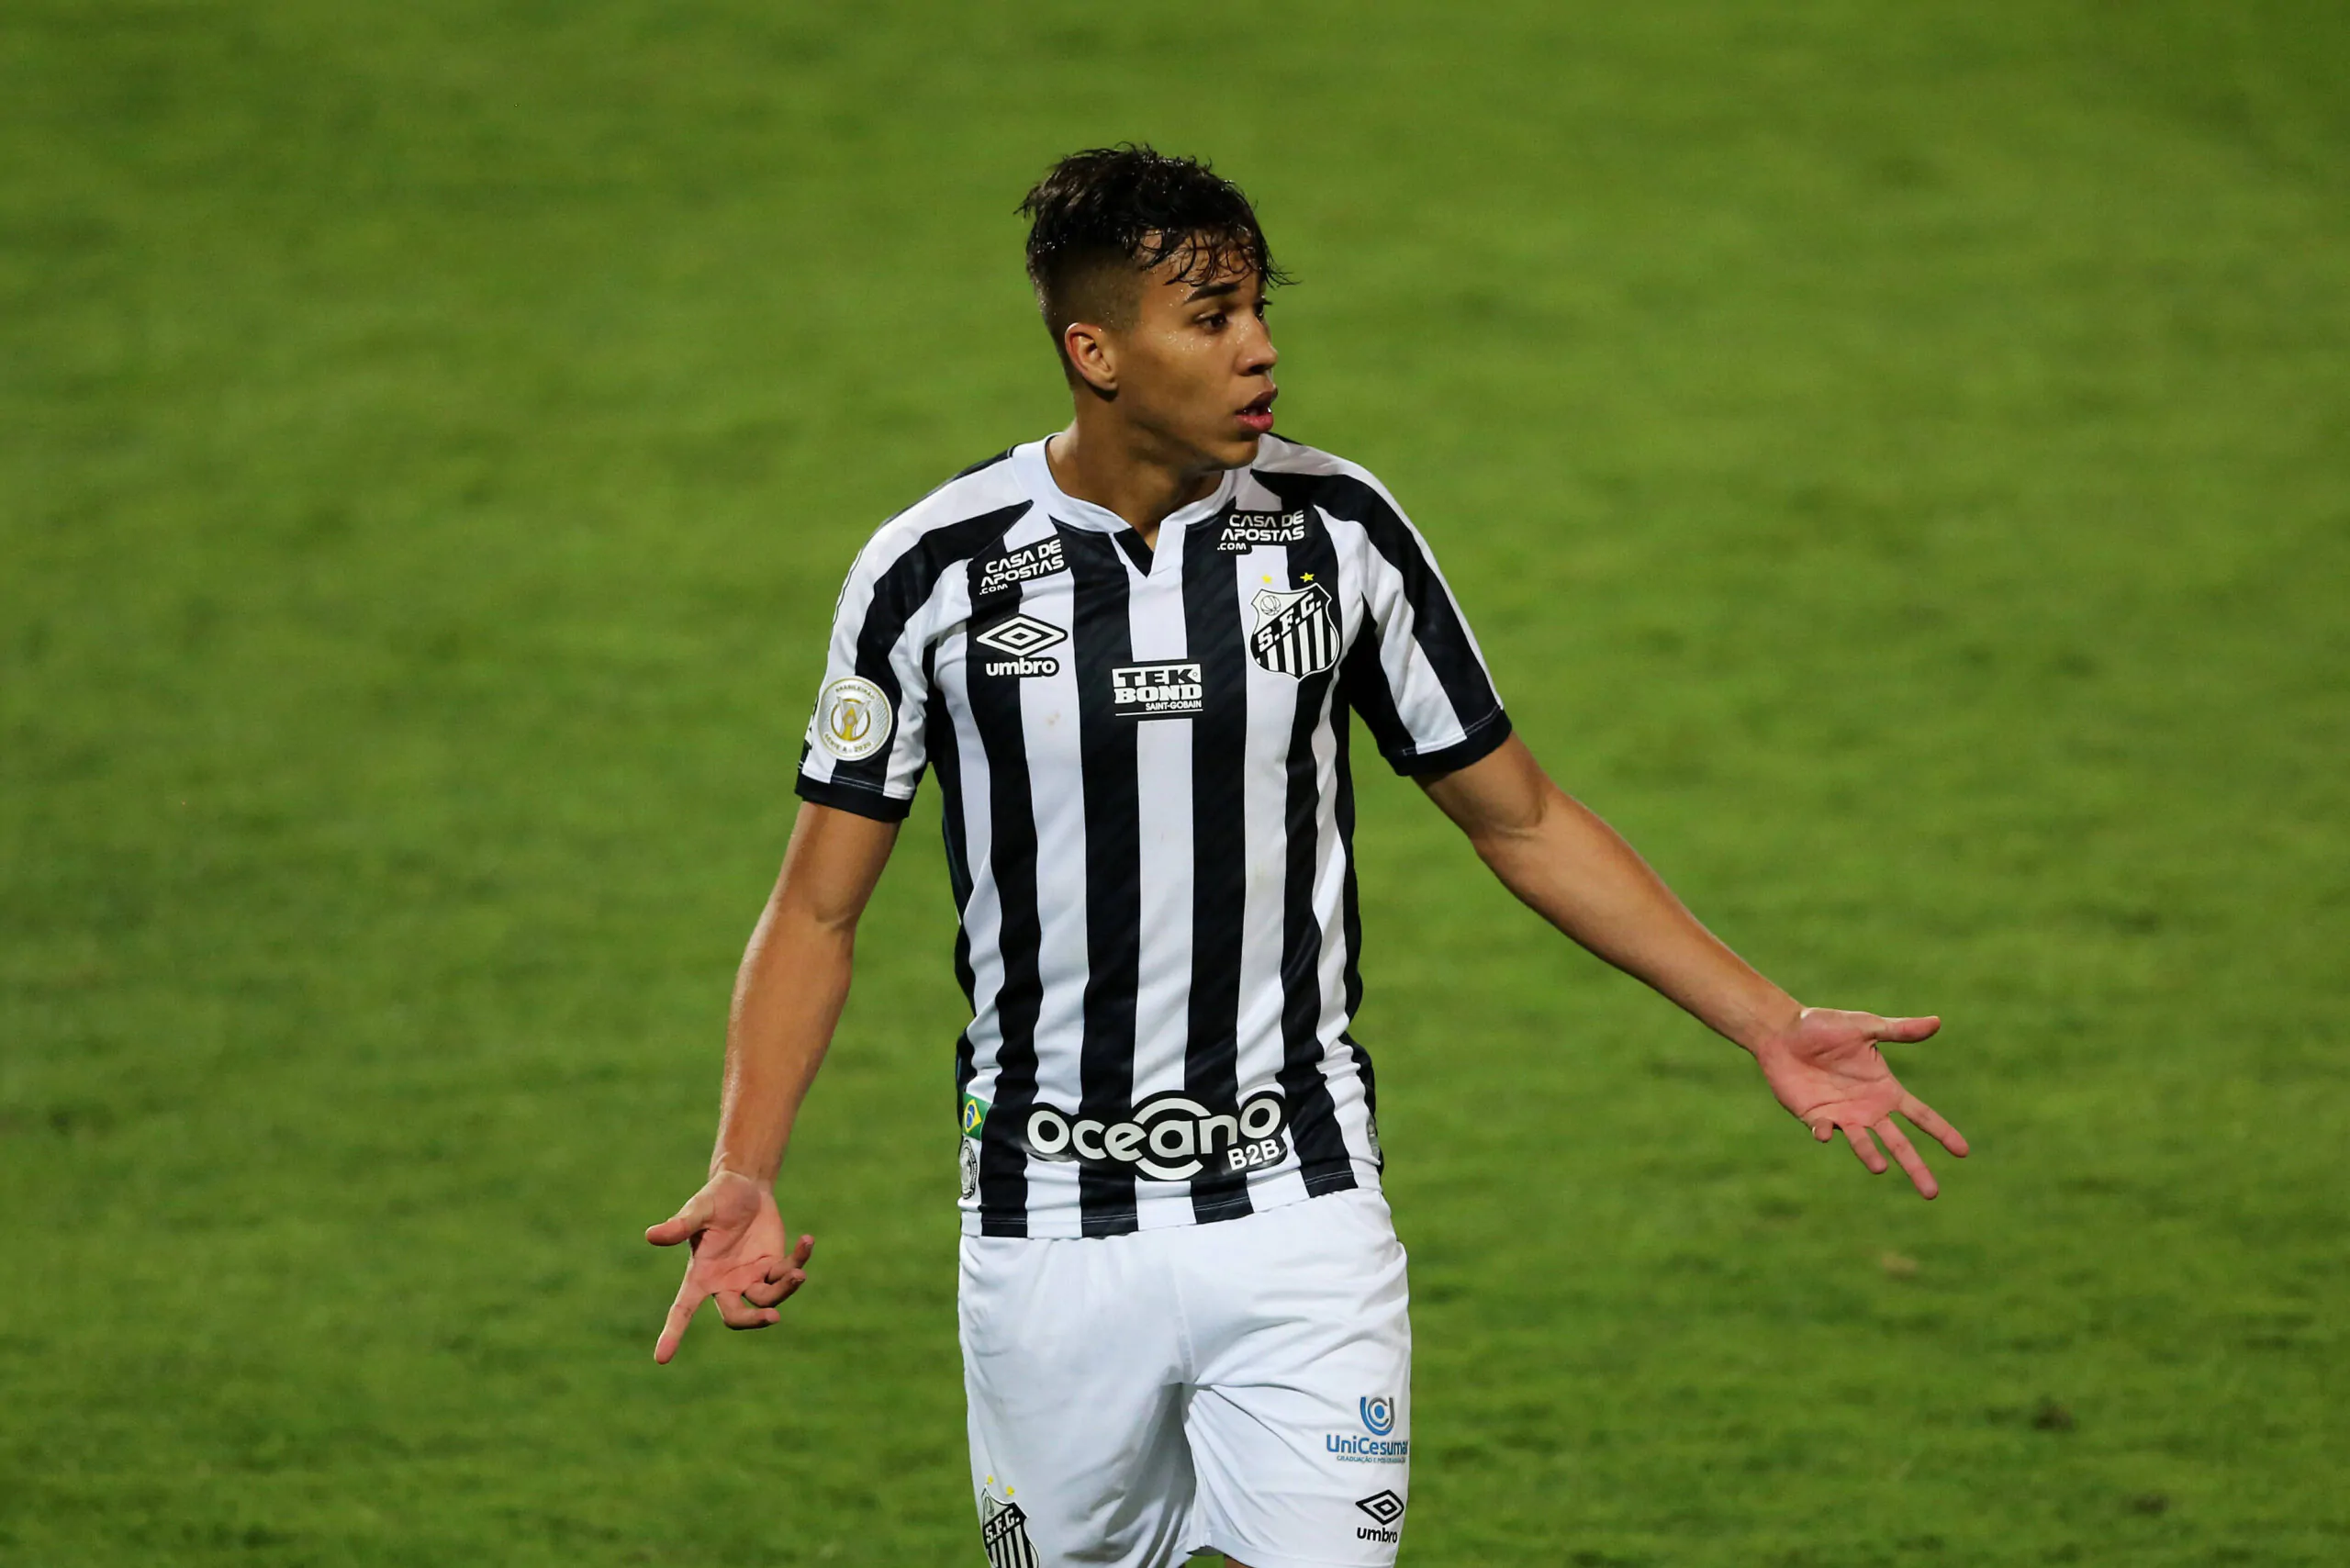 Ufficiale – Kaio Jorge è un nuovo giocatore della Juventus